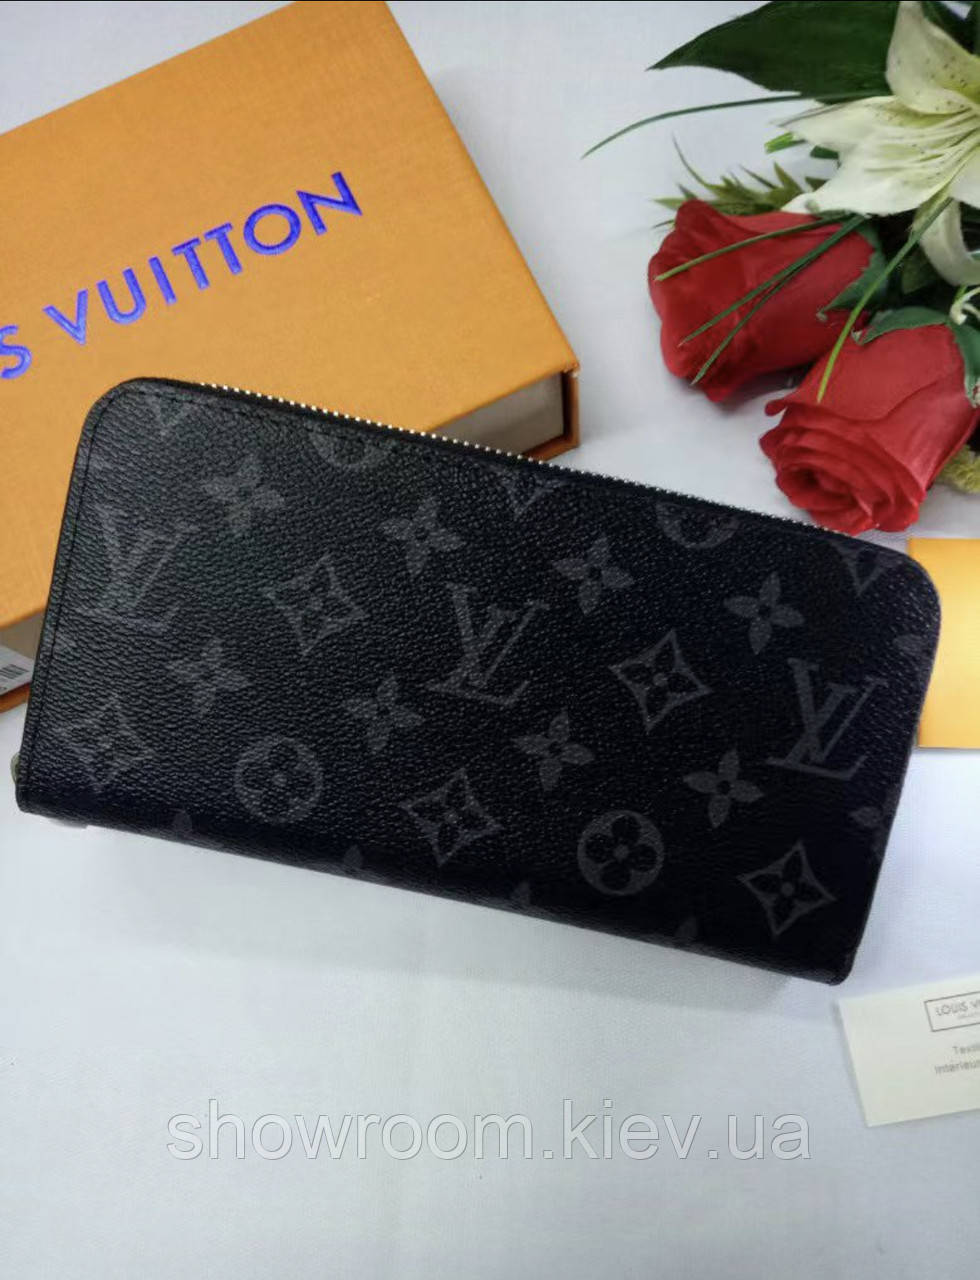 Купить Мужской кошелек Louis Vuitton (60017) dark grey, цена 986